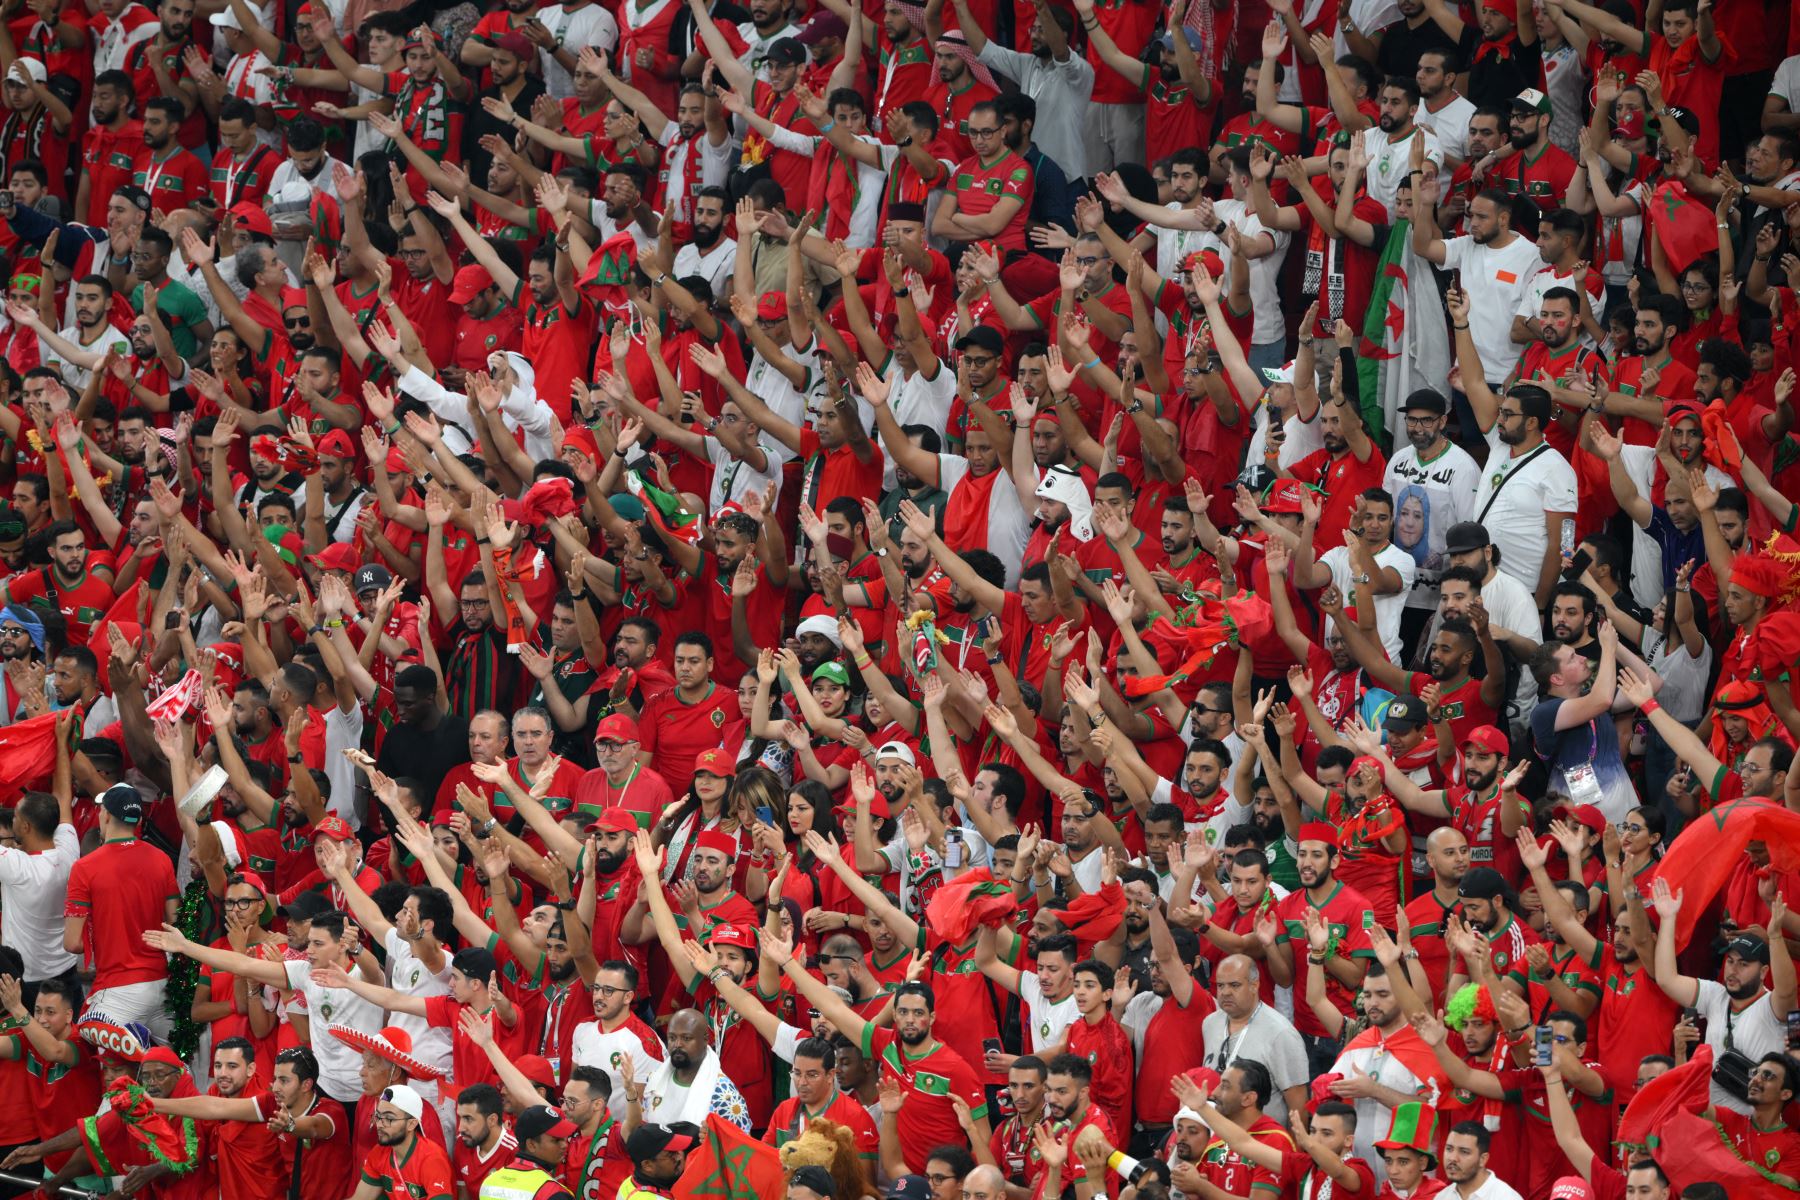 Los partidarios de Marruecos animan durante el partido de fútbol del Grupo F de la Copa Mundial de Qatar 2022 entre Canadá y Marruecos en el Estadio Al-Thumama en Doha el 1 de diciembre de 2022.
Foto: AFP